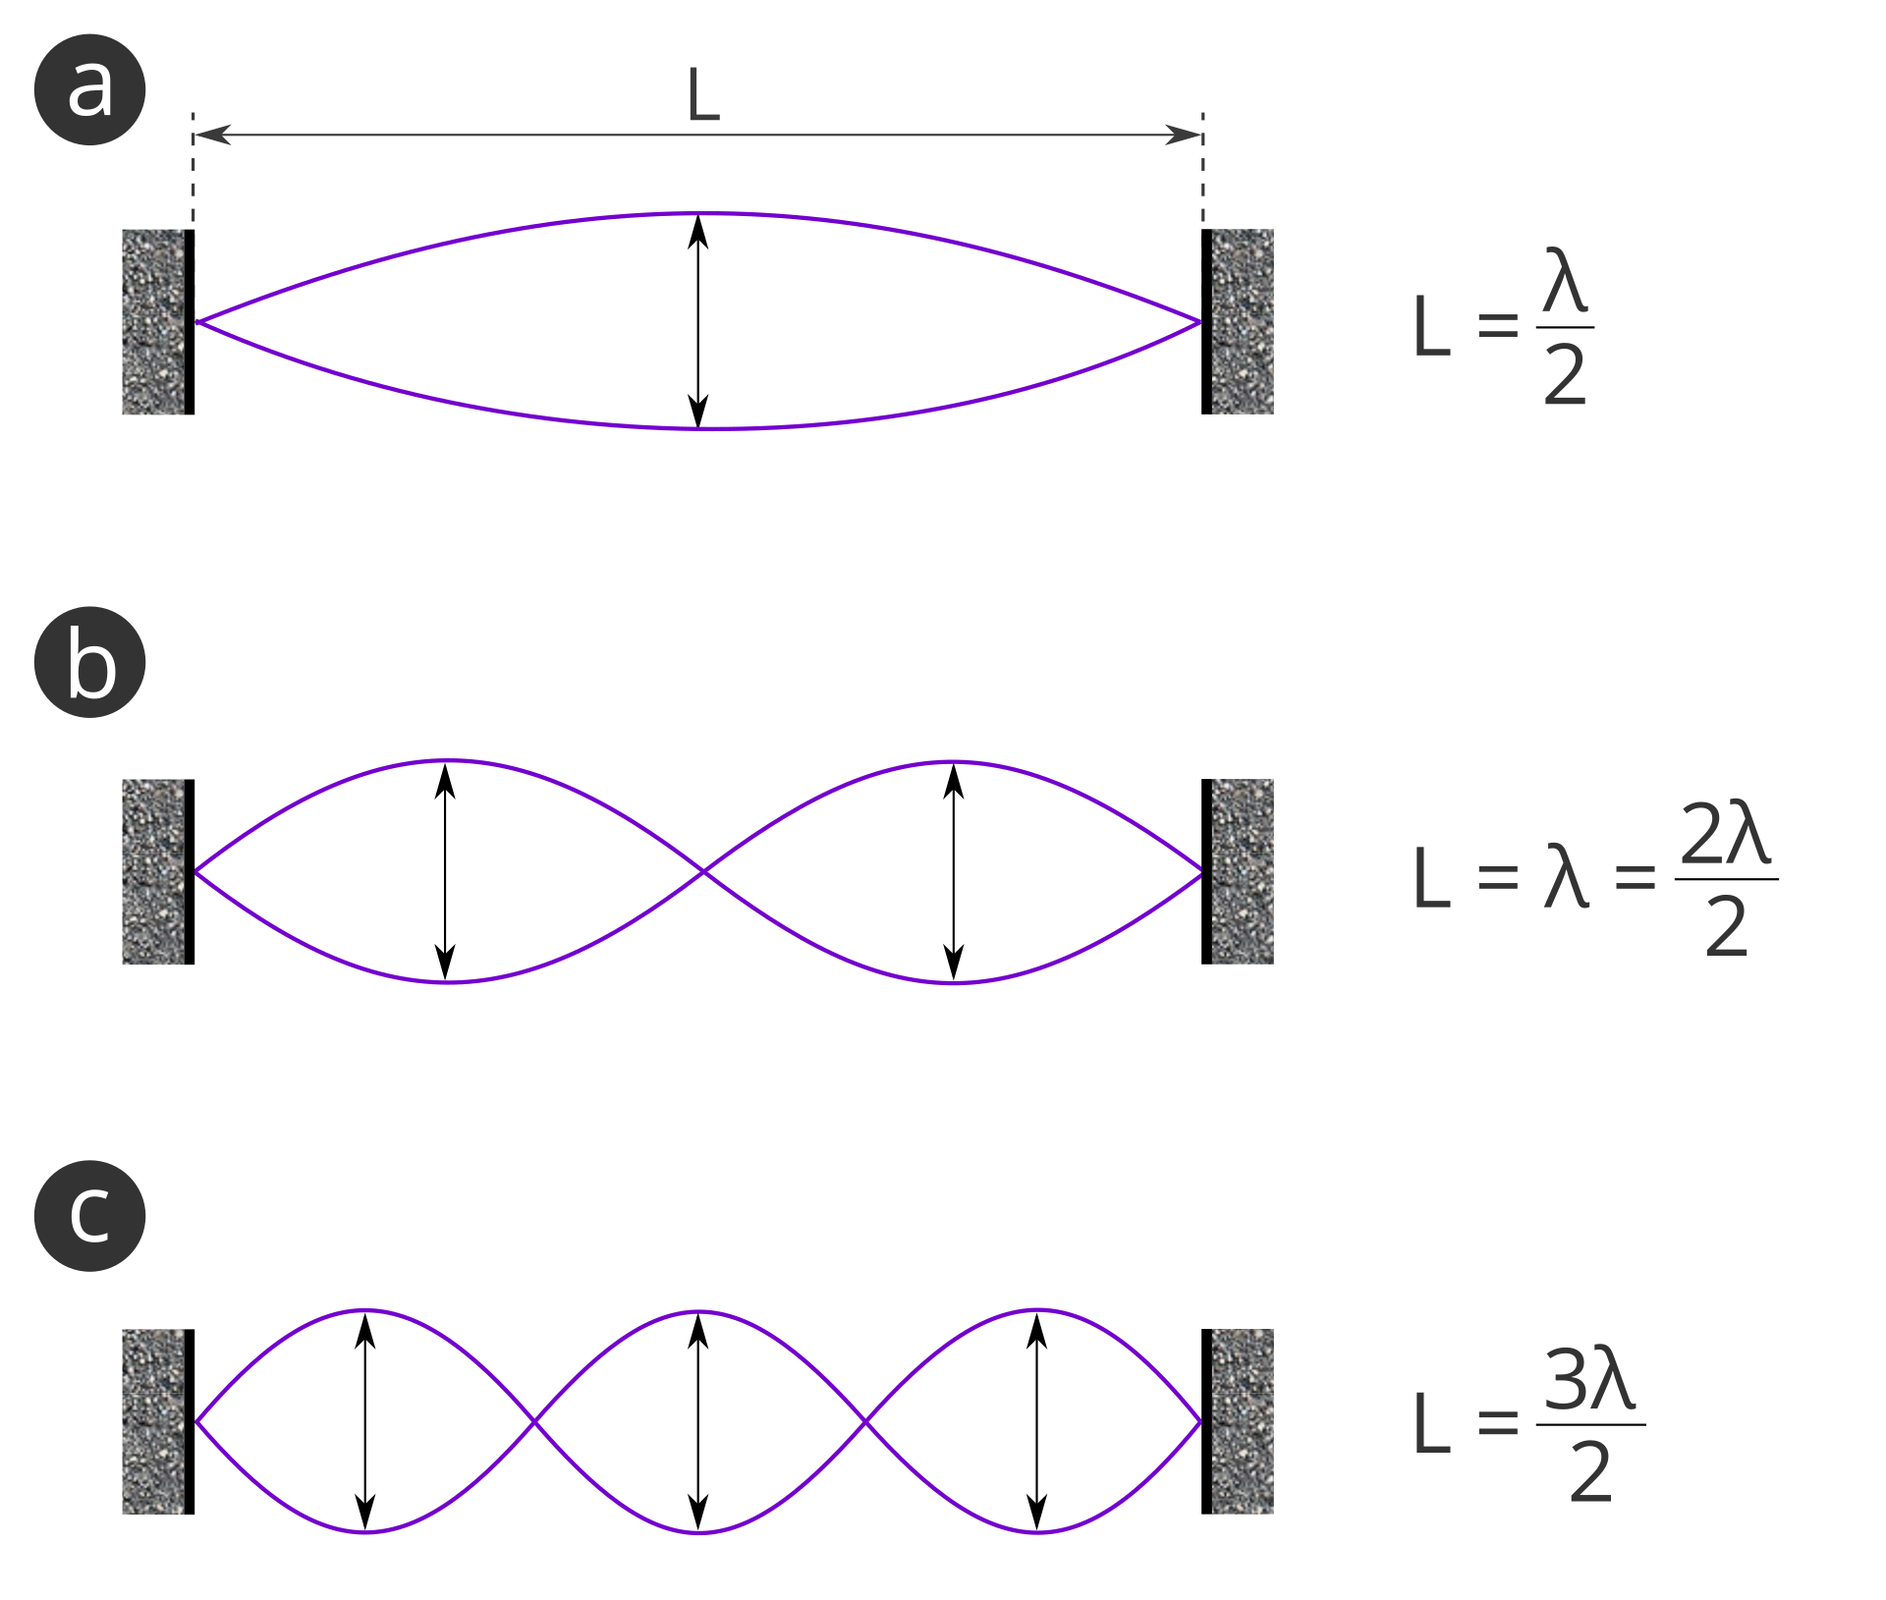 Na rysunku przedstawione są 3 fale stojące o różnych długościach. Na schemacie a jest jedna strzałka, w b są dwie strzałki, a w c są trzy strzałki.